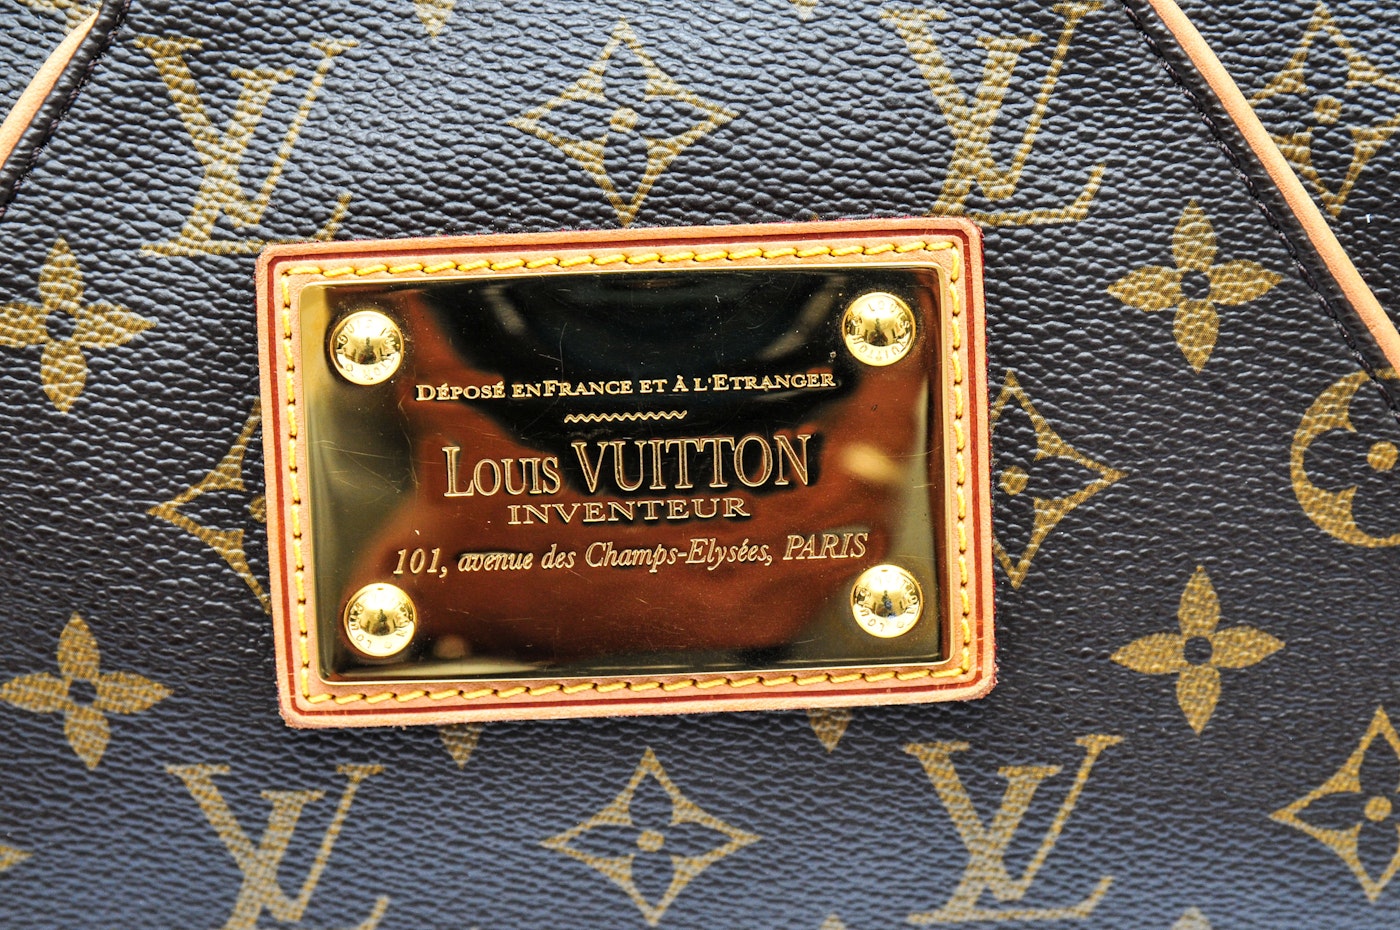 Louis Vuitton Inventeur 101 Avenue Des Champs Elysees Paris Price | Confederated Tribes of the ...